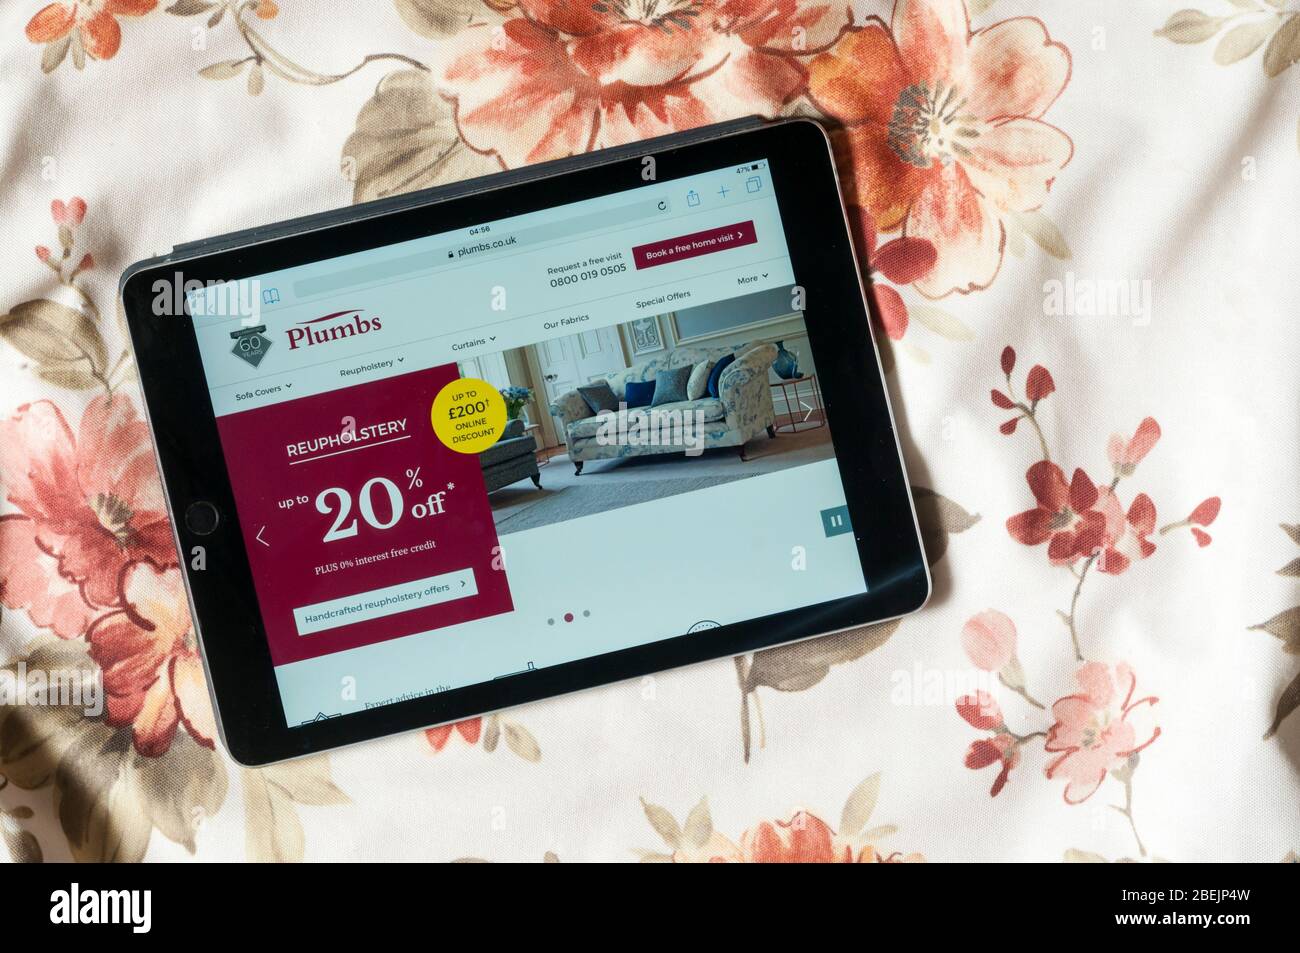 El sitio web de la empresa de tapicería de plumbs se muestra en un iPad tablet con cubierta de tela estampada en el fondo. Foto de stock